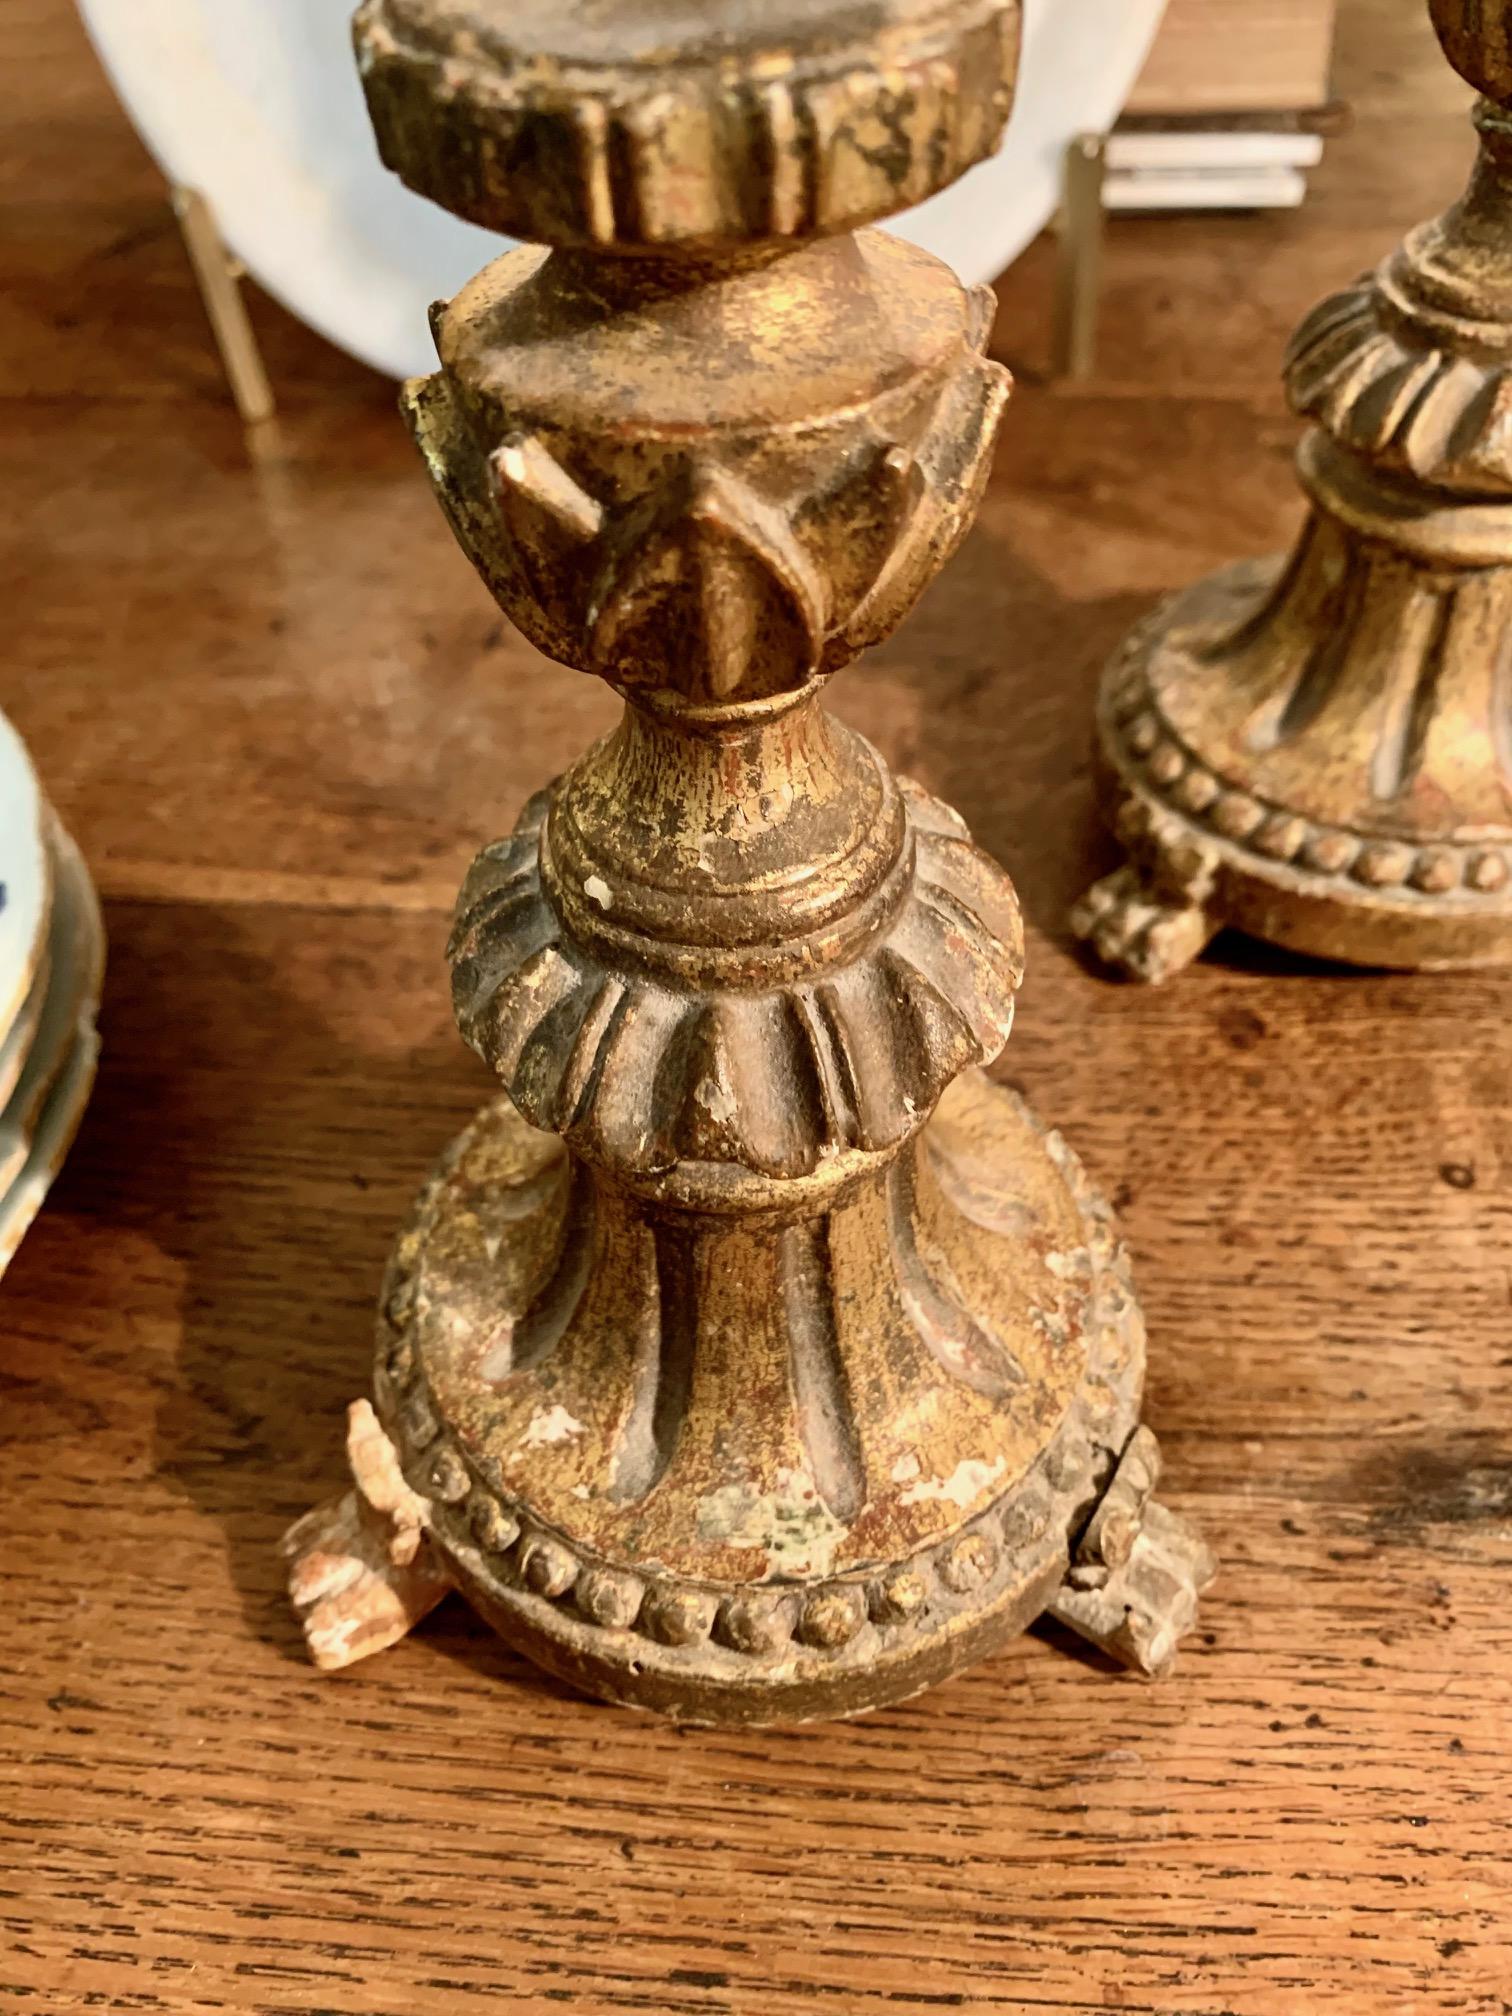 Une belle paire de chandeliers ou petits porte-torches d'époque baroque espagnole, ils faisaient sûrement partie du trousseau d'autel de l'église, en bois doré et sculpté à la main avec des restes de polychromie, ils reposent sur des pieds en